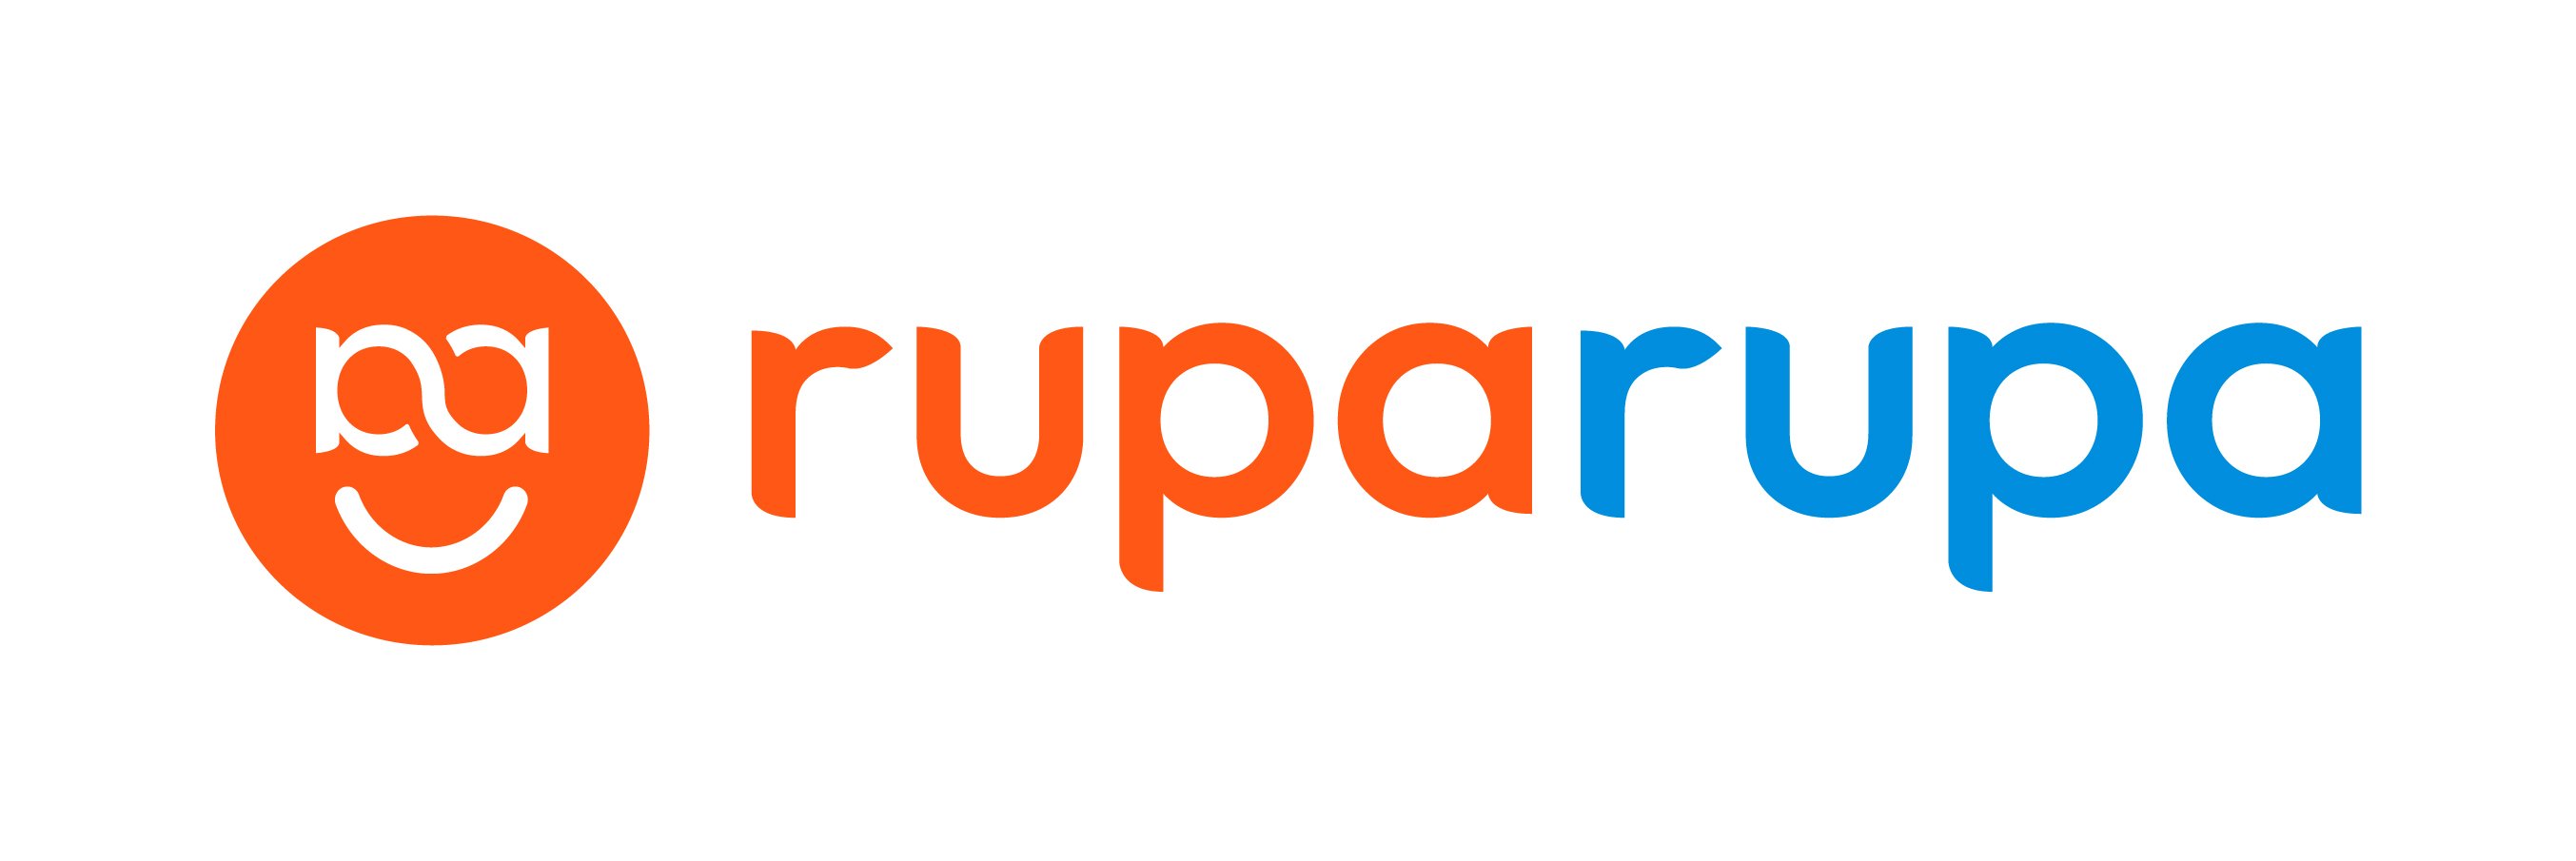 Ruparupa (ID)